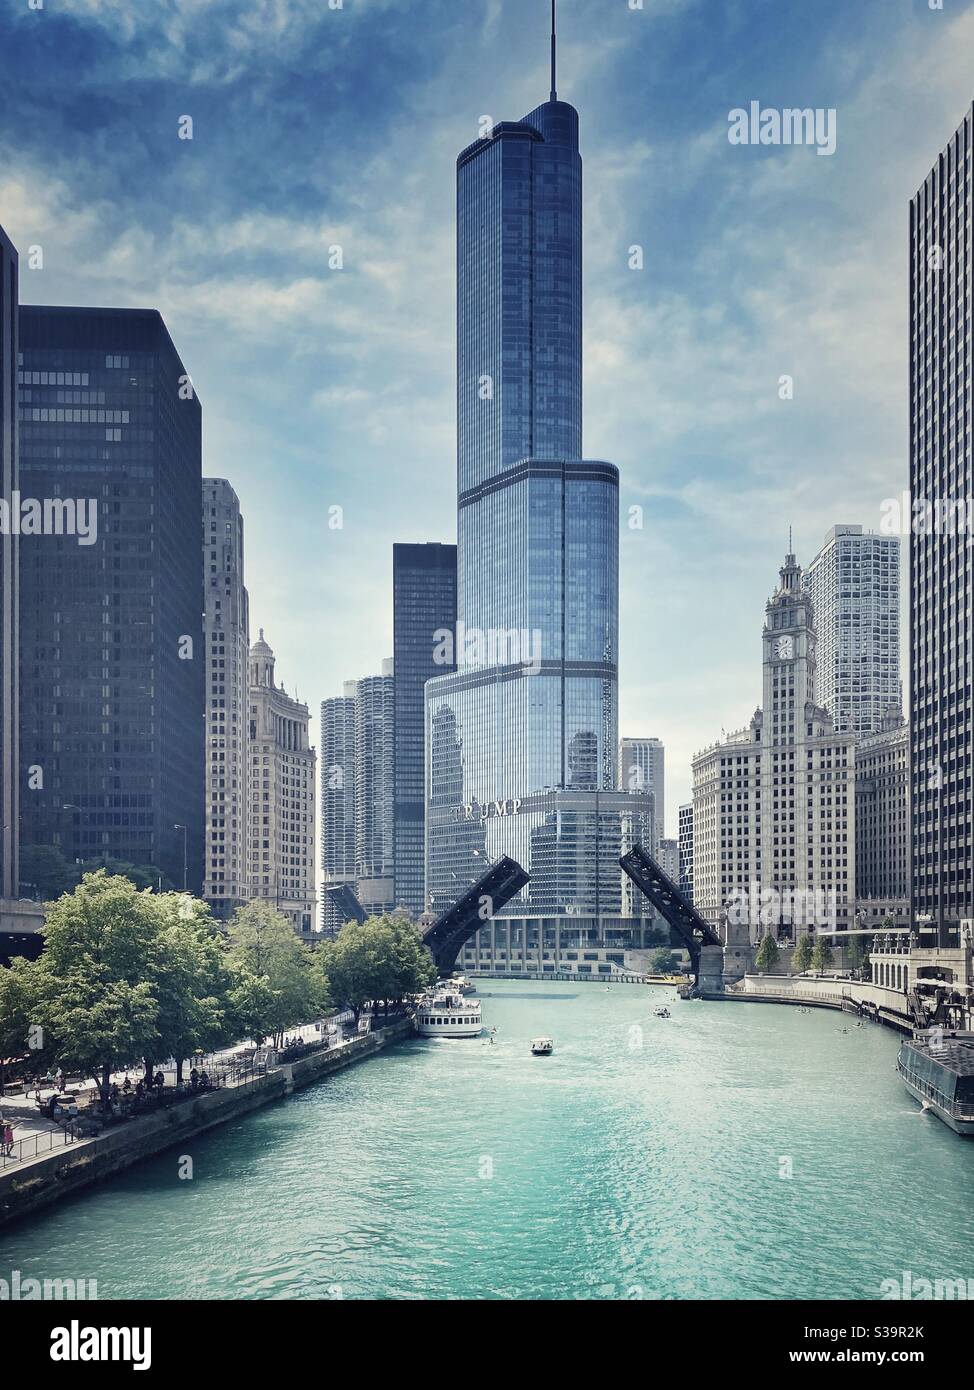 Centro di Chicago e vista sulla Trump Tower sul fiume Chicago con il ponte sollevato in una bella giornata di sole. Foto Stock